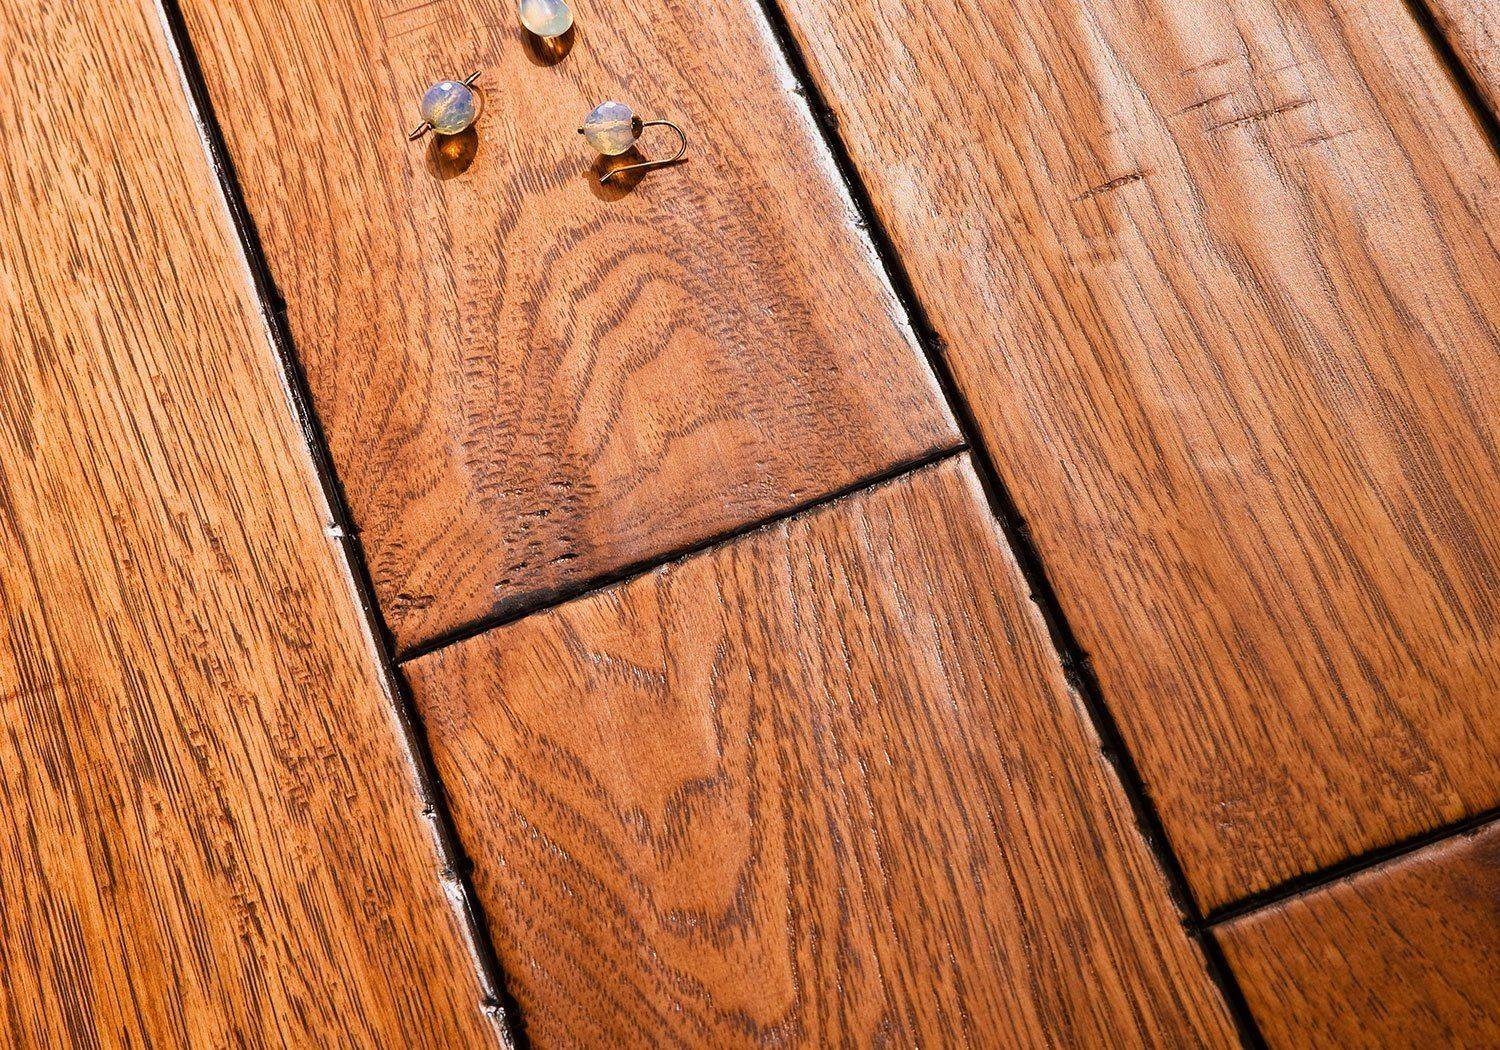 Чем покрыть деревянный пол в квартире или доме: маслом, лаком, воском или краской